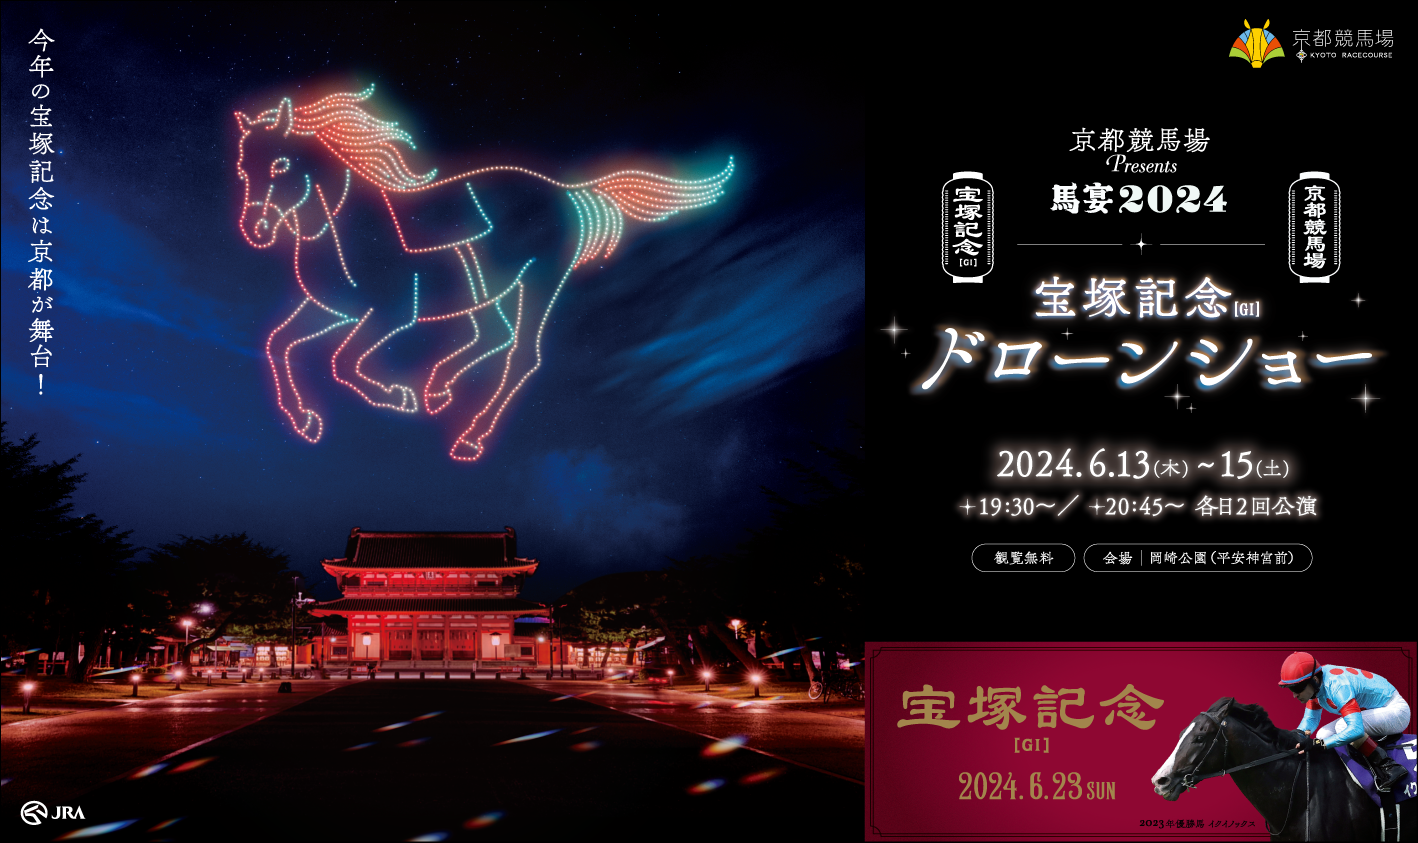 京都競馬場Presents 馬宴2024 宝塚記念ドローンショー in 平安神宮のアイキャッチ画像